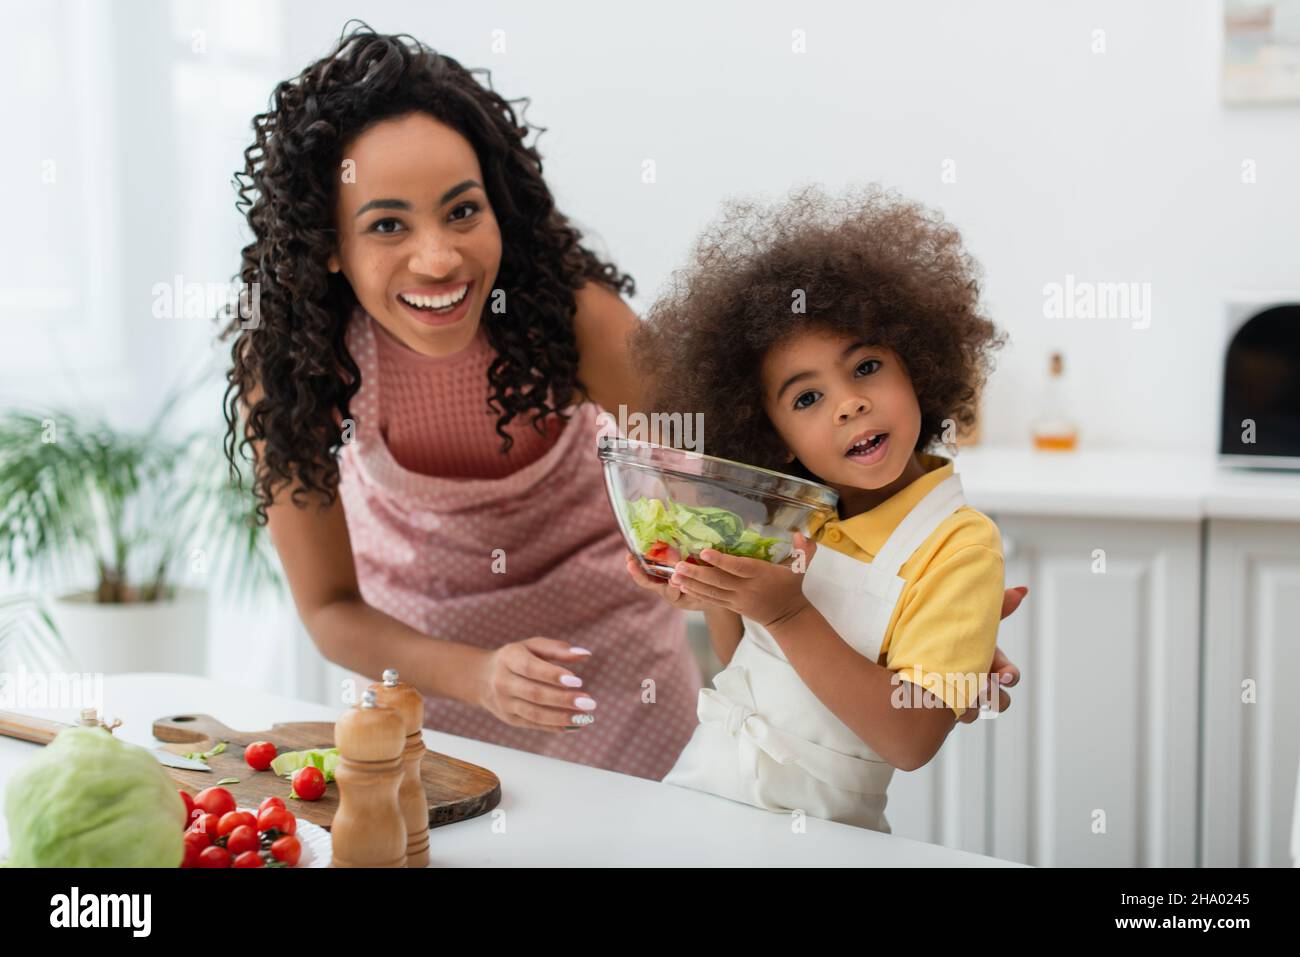 Sorridente donna americana africana guardando la macchina fotografica vicino alla figlia con ciotola di insalata a casa Foto Stock